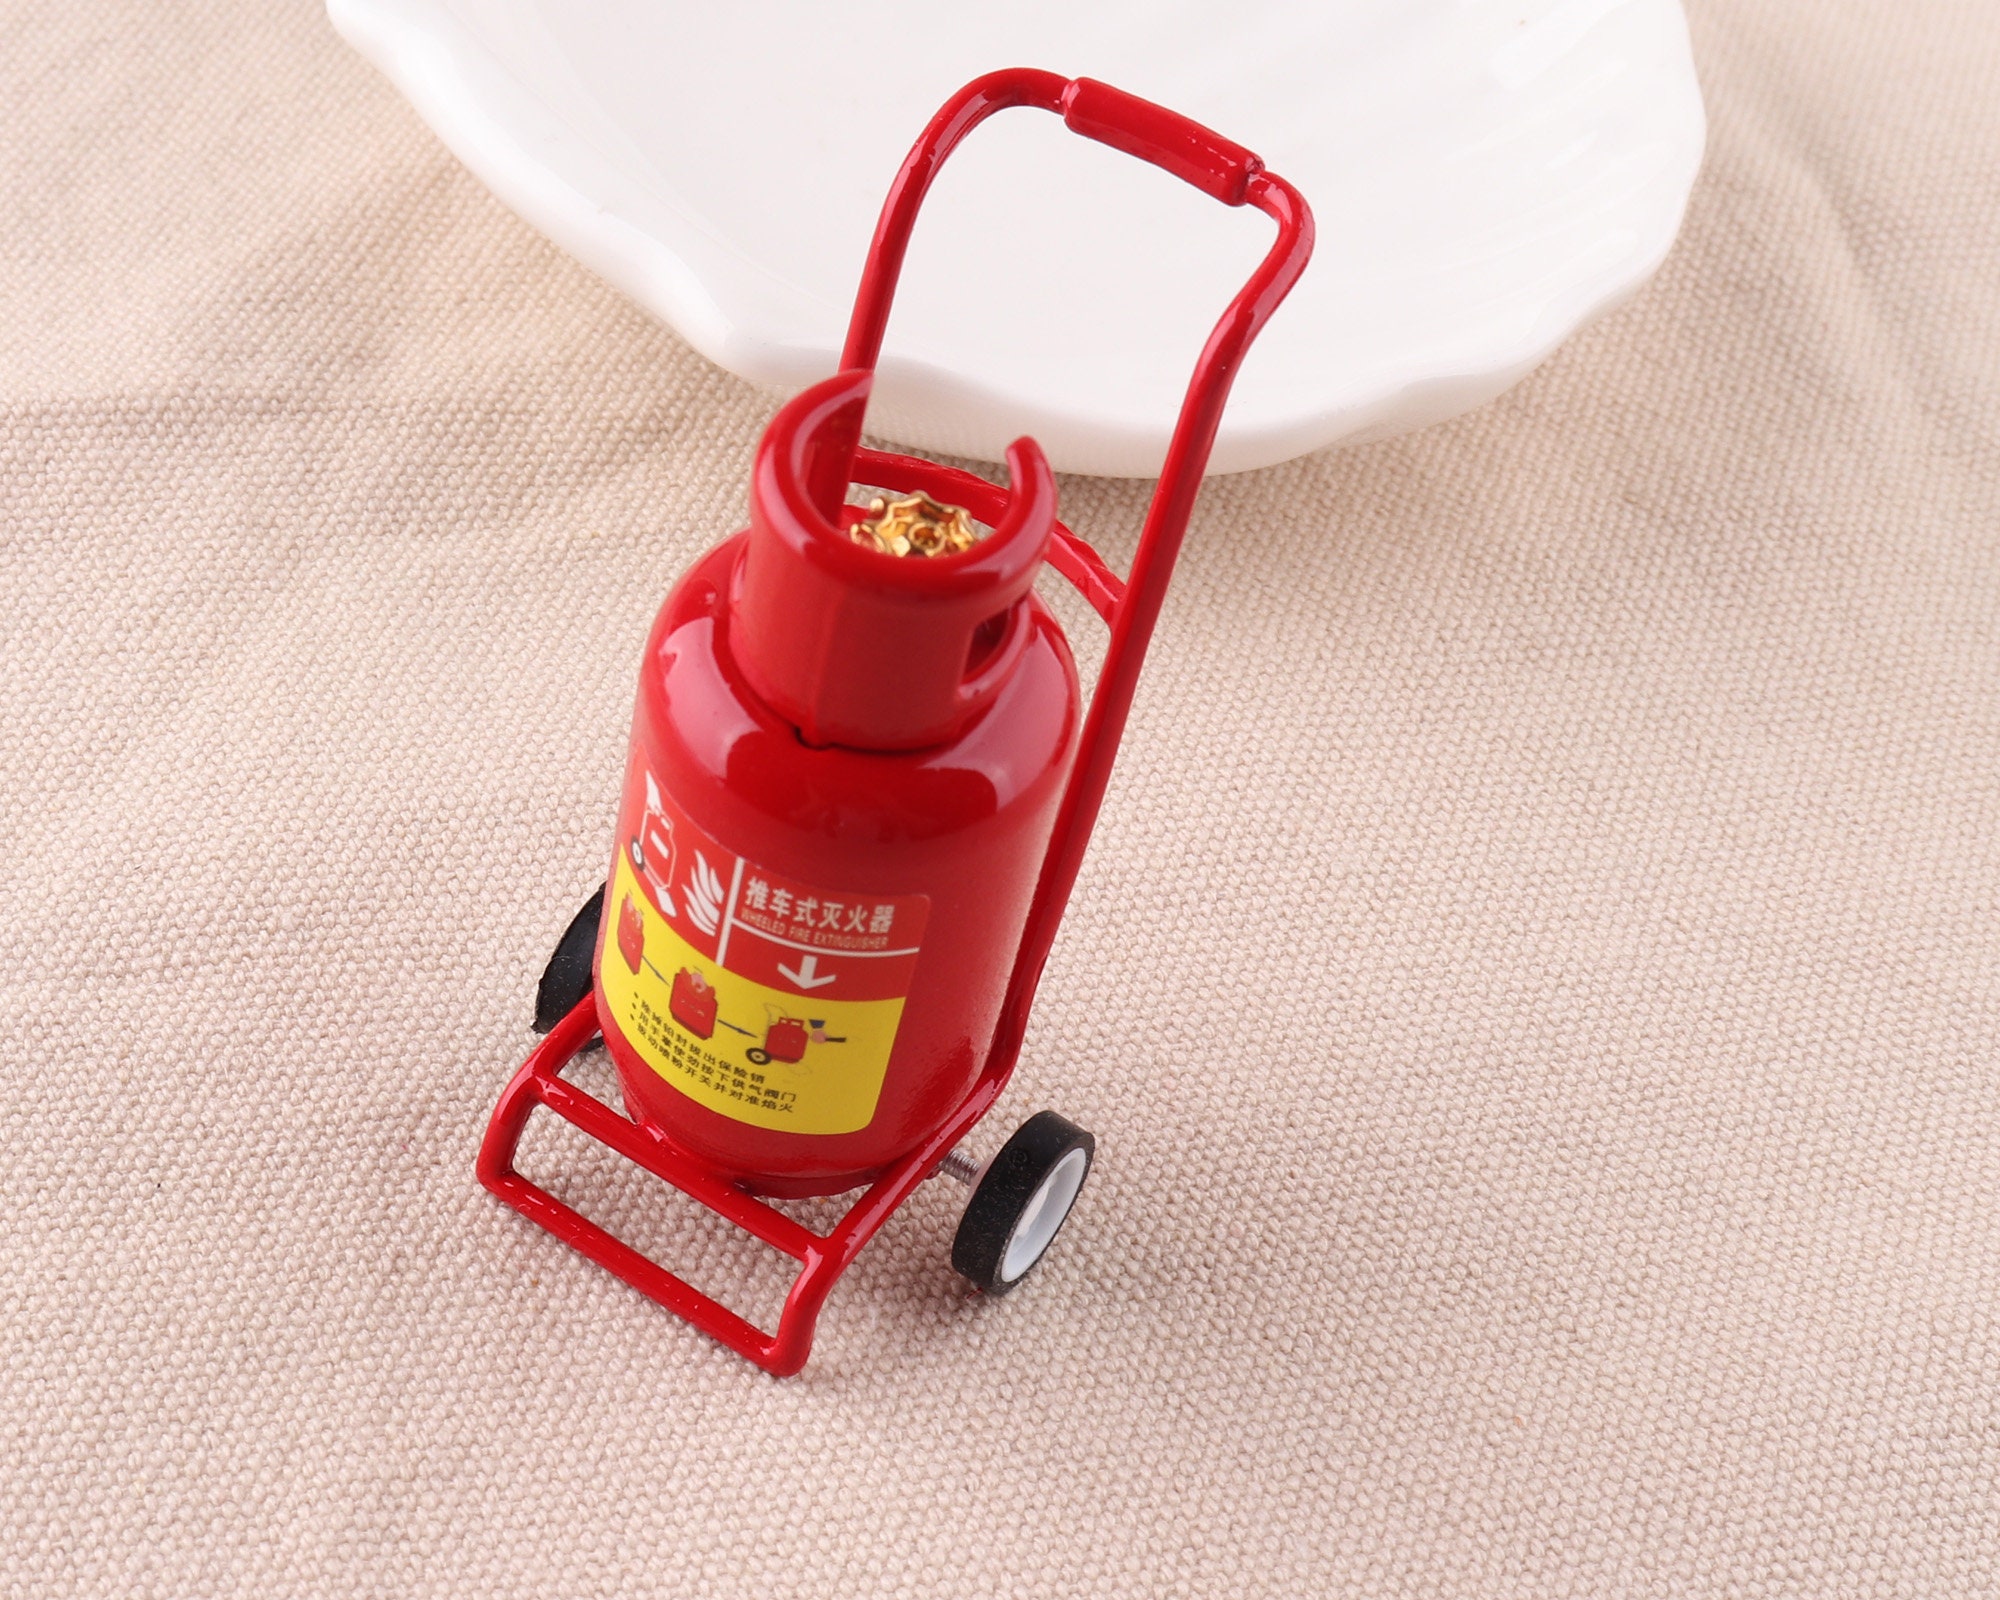 Extintor de incendios en miniatura, Mini extintor de incendios de carro,  juego de rol modelo juguete, miniatura extintor de incendios Dollhouse Home  decor suministros -  España